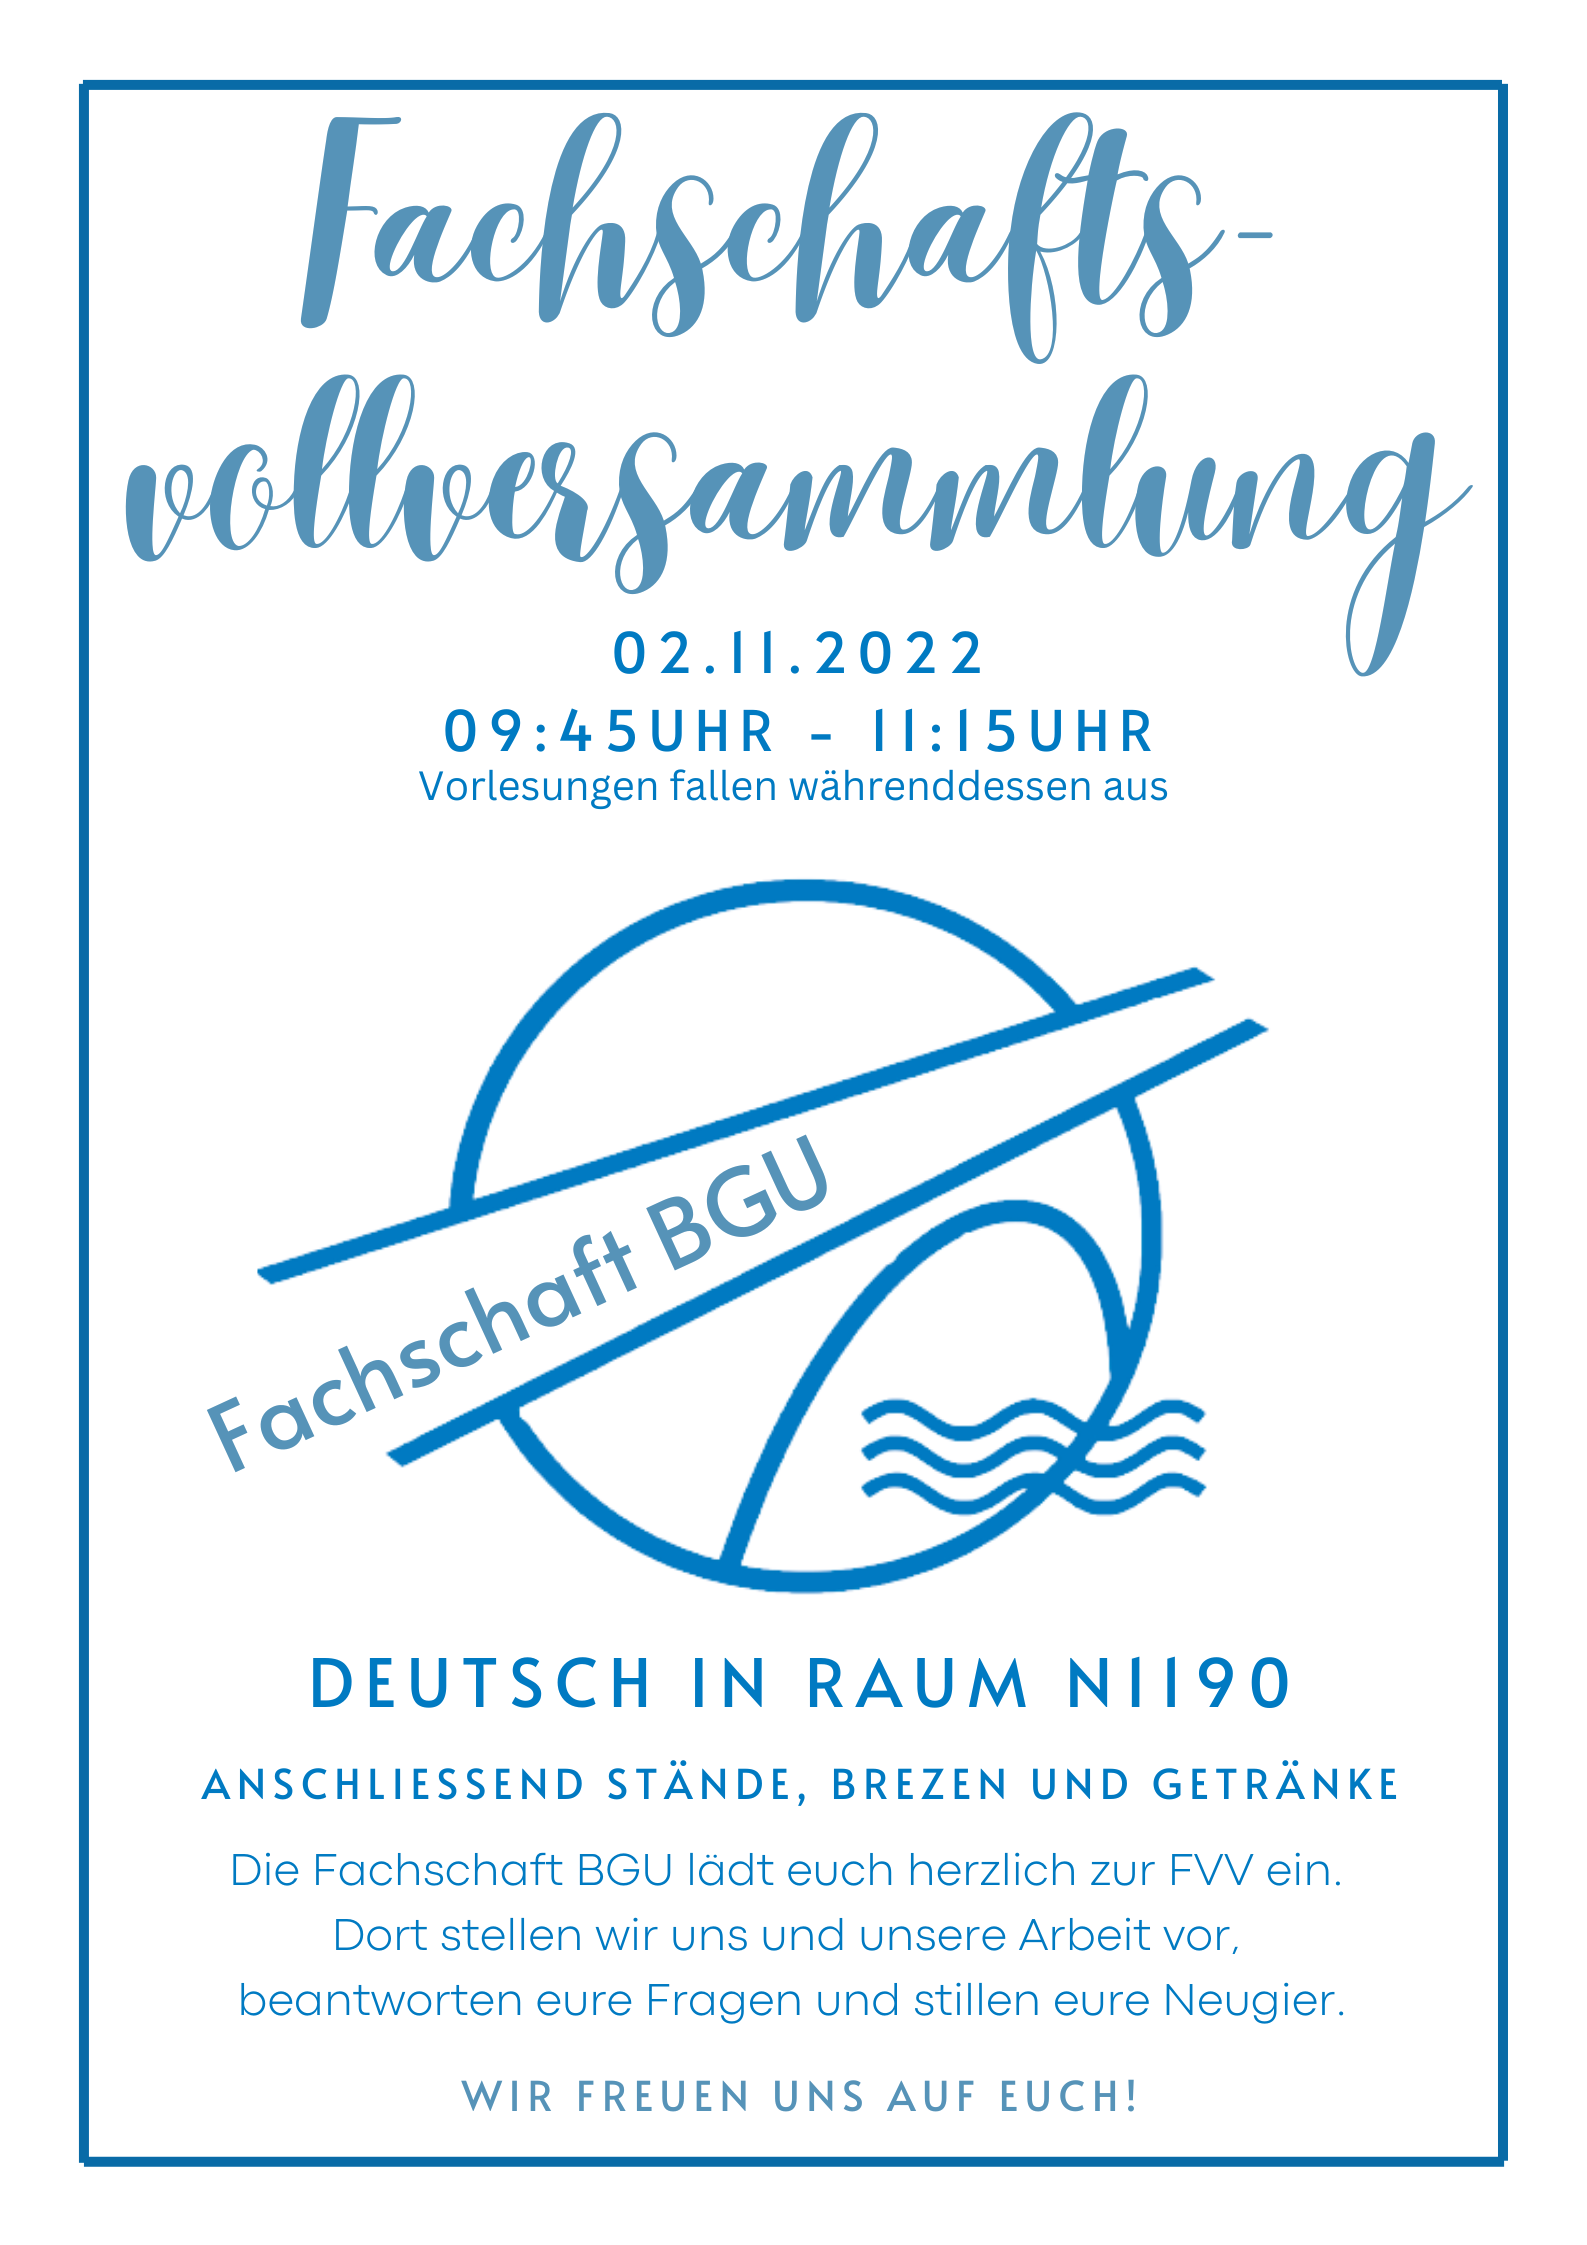 FVV_WS22_Poster_Deutsch.png